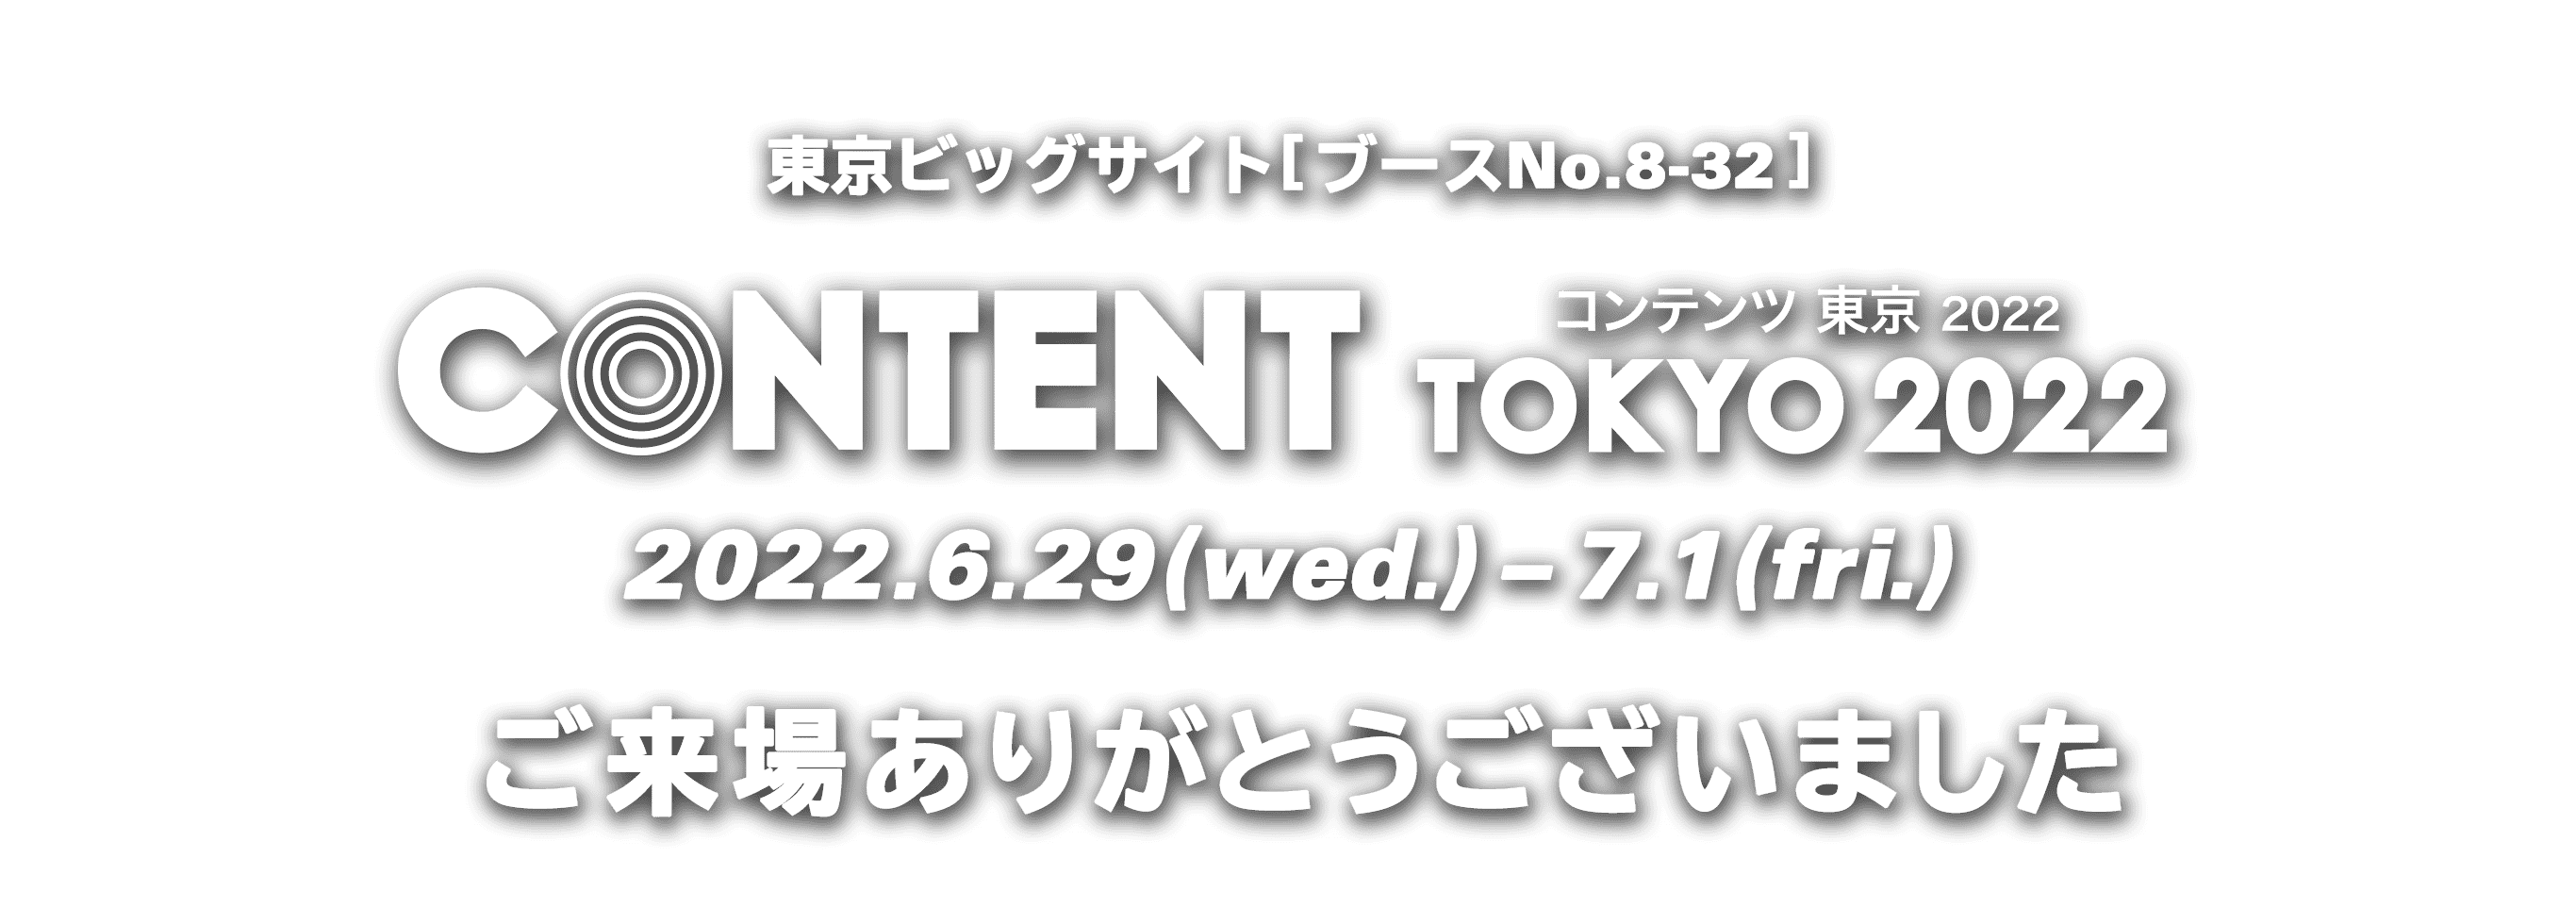 東京ビッグサイト[ブースNo.8-32] CONTENT TOKYO コンテンツ 東京 2022.6.29(wed.)-7.1(fri.)ご来場ありがとうございました！